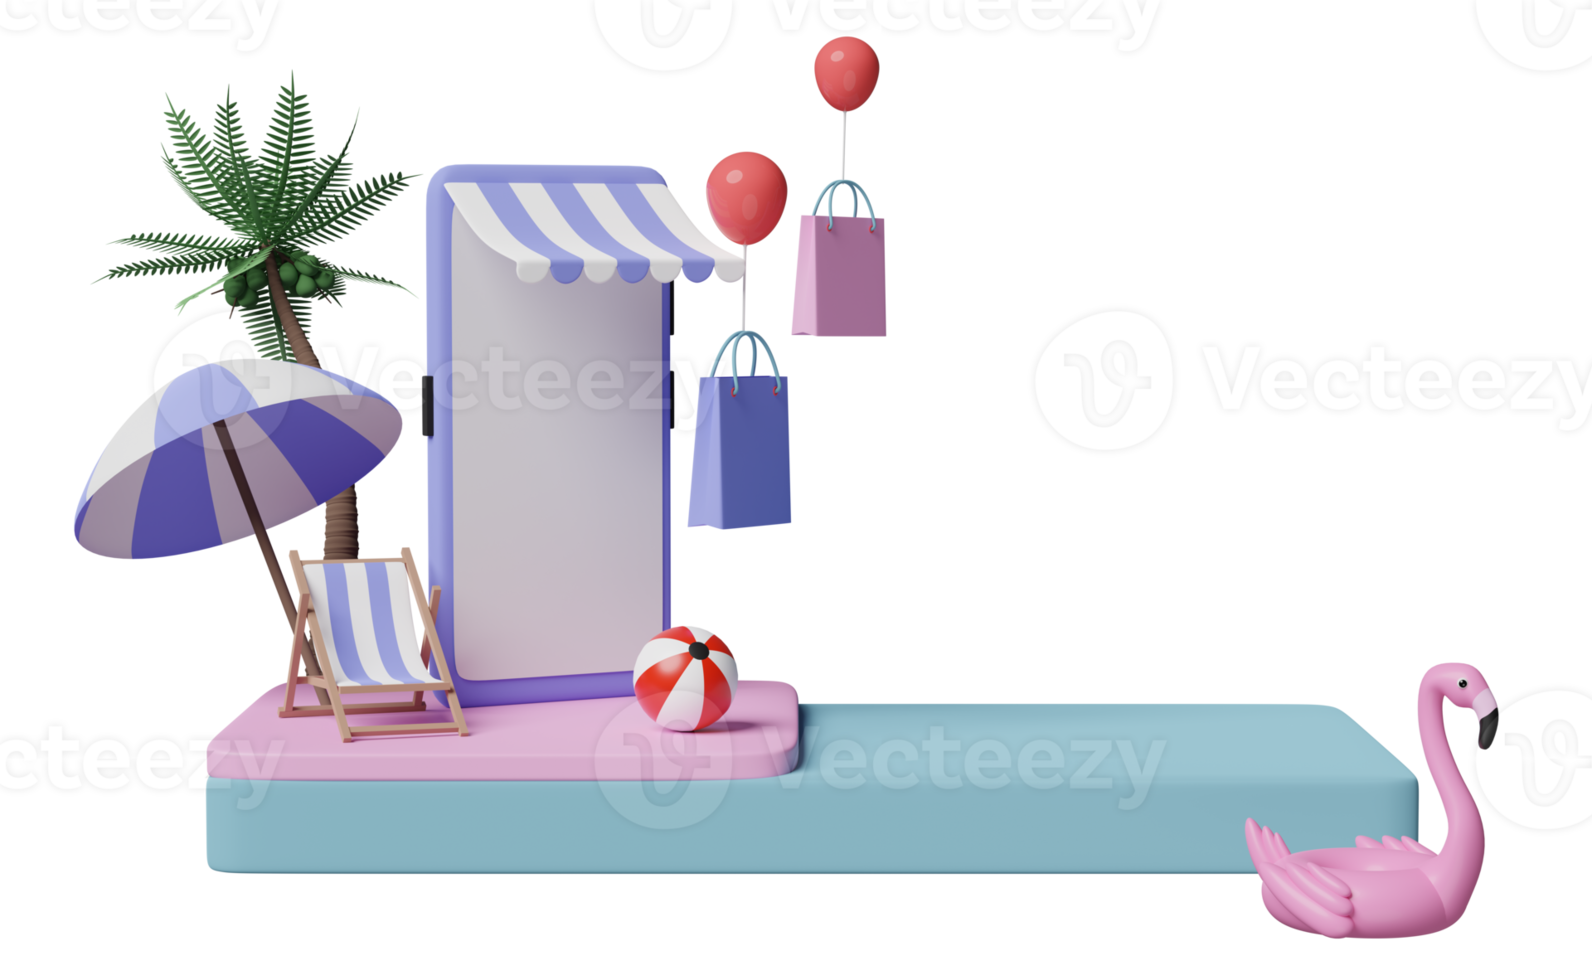 3d skede podium med mobil telefon eller smartphone Lagra främre, strand stol, uppblåsbar flamingo, handflatan blad, handla papper påsar, uppkopplad handla sommar försäljning begrepp, 3d framställa illustration png